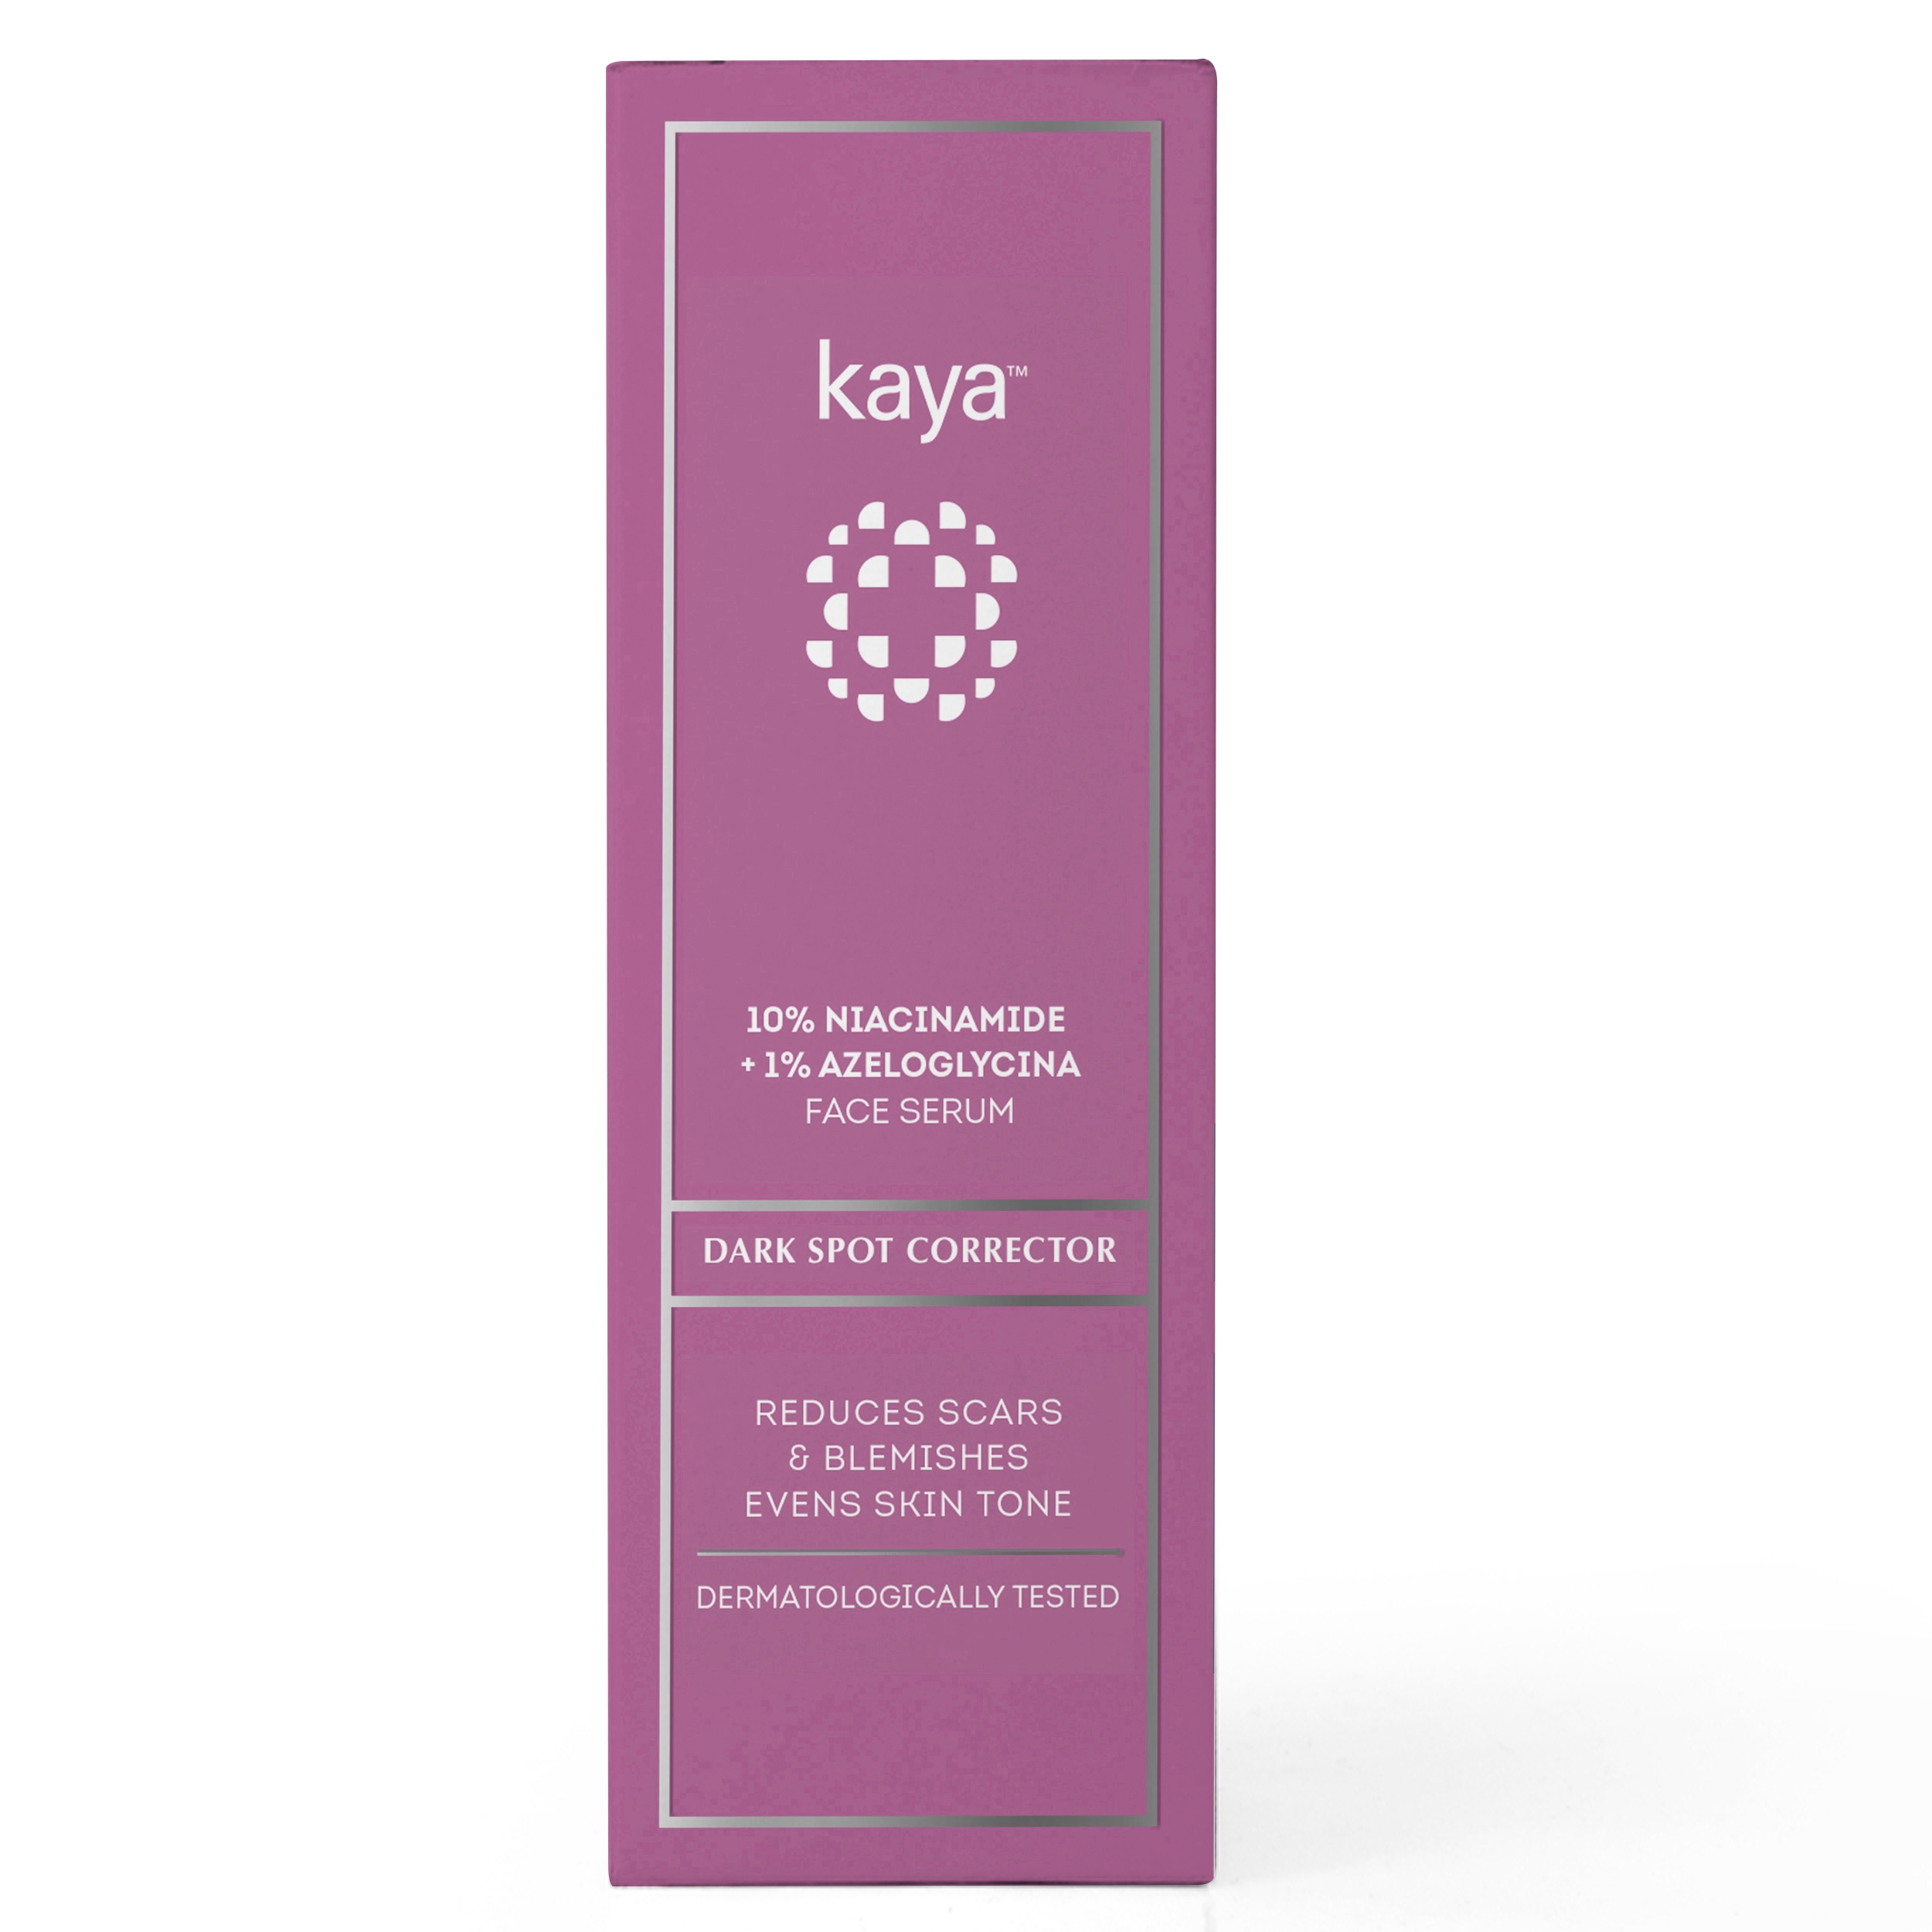 kaya Kaya 10% Niacinamide + 1% Azeloglycina Face Serum
Dark Spot Corrector